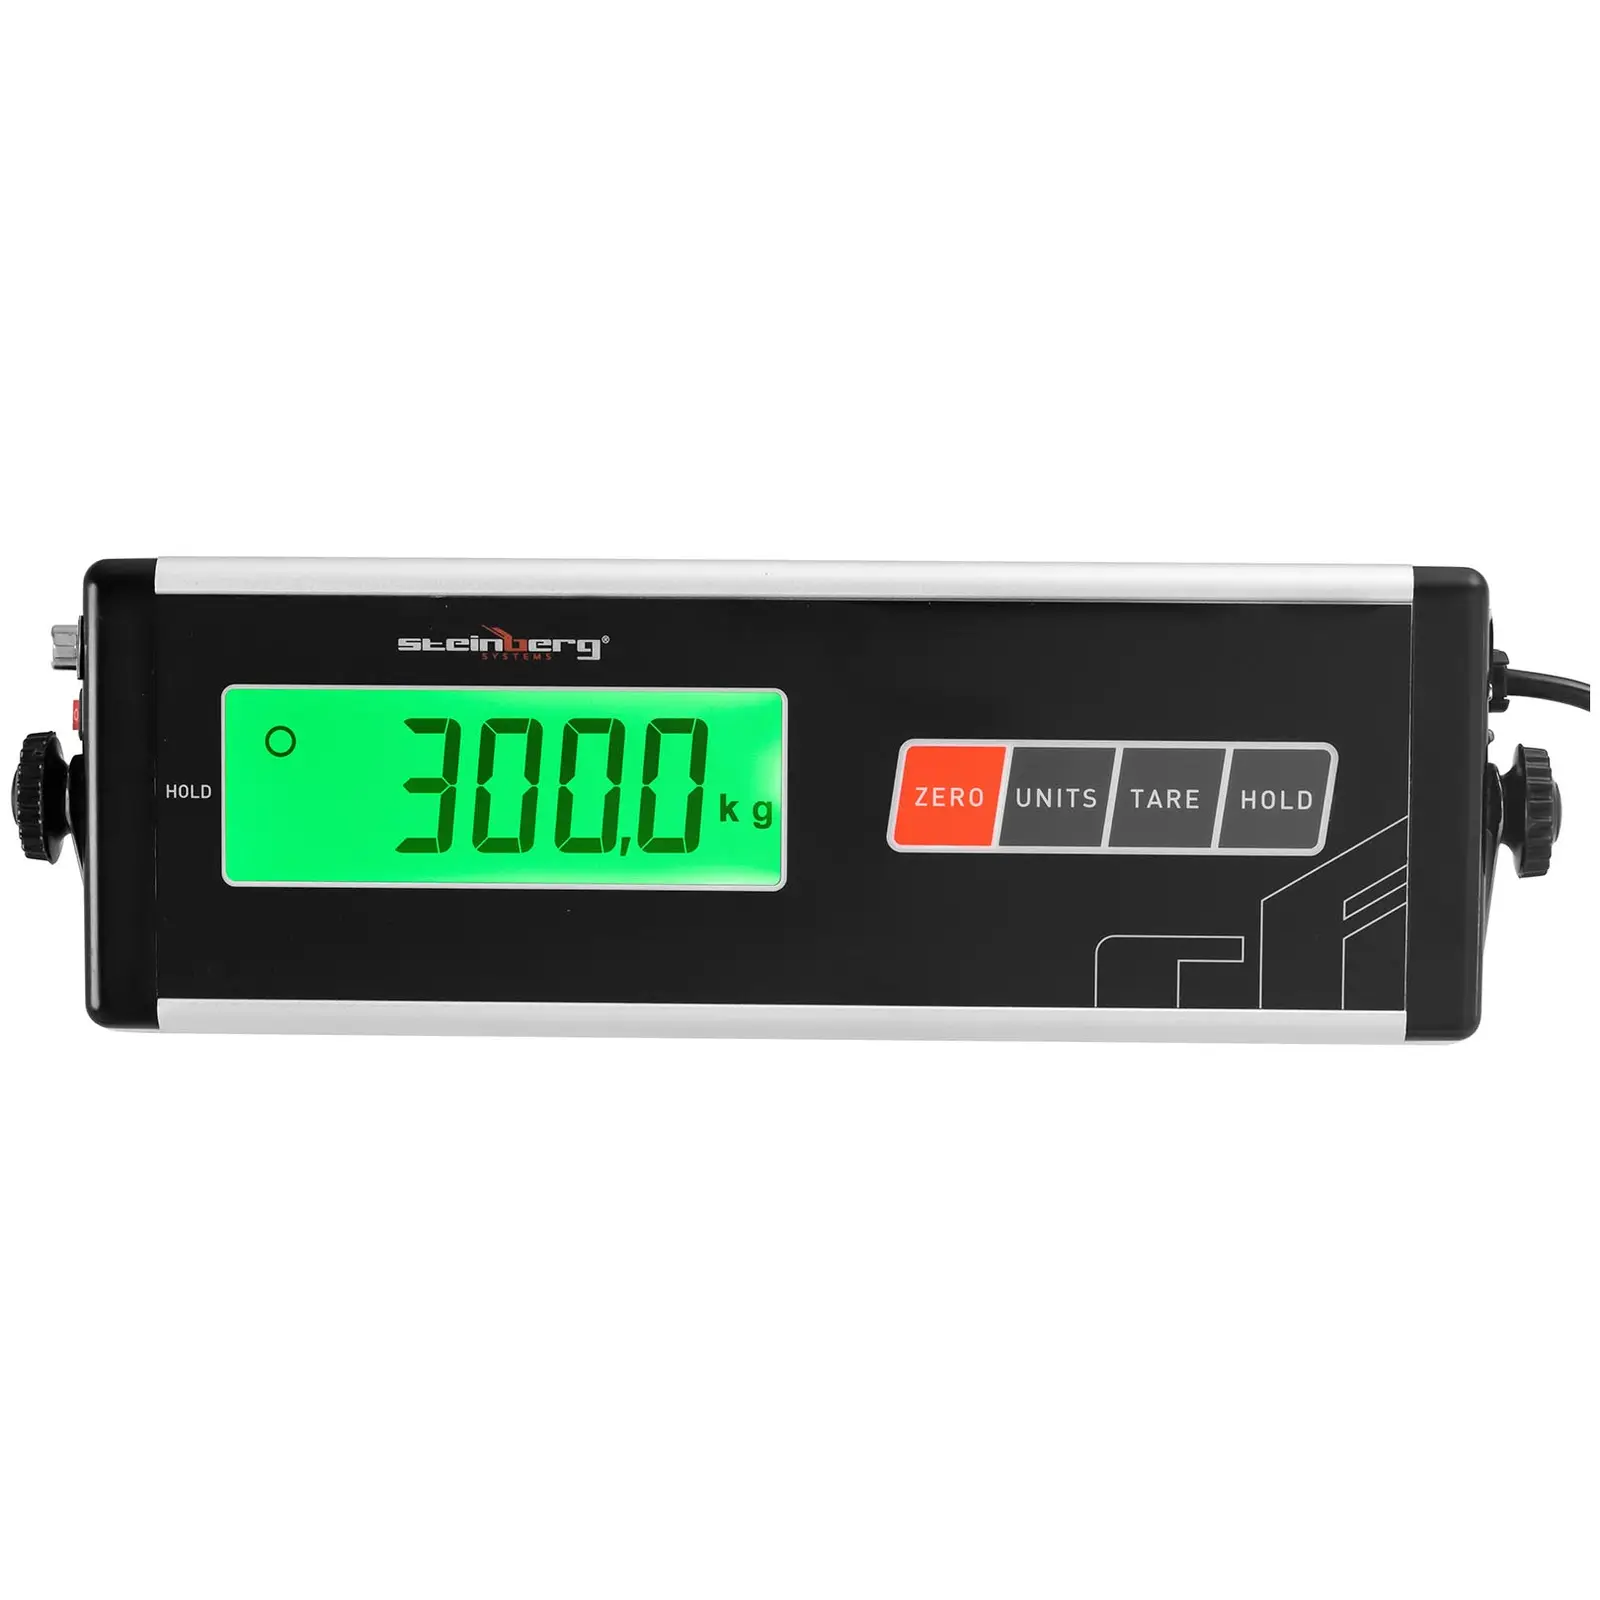 Skládací nástěnná váha - 300 kg / 100 g - 55 x 45 cm - externí LCD